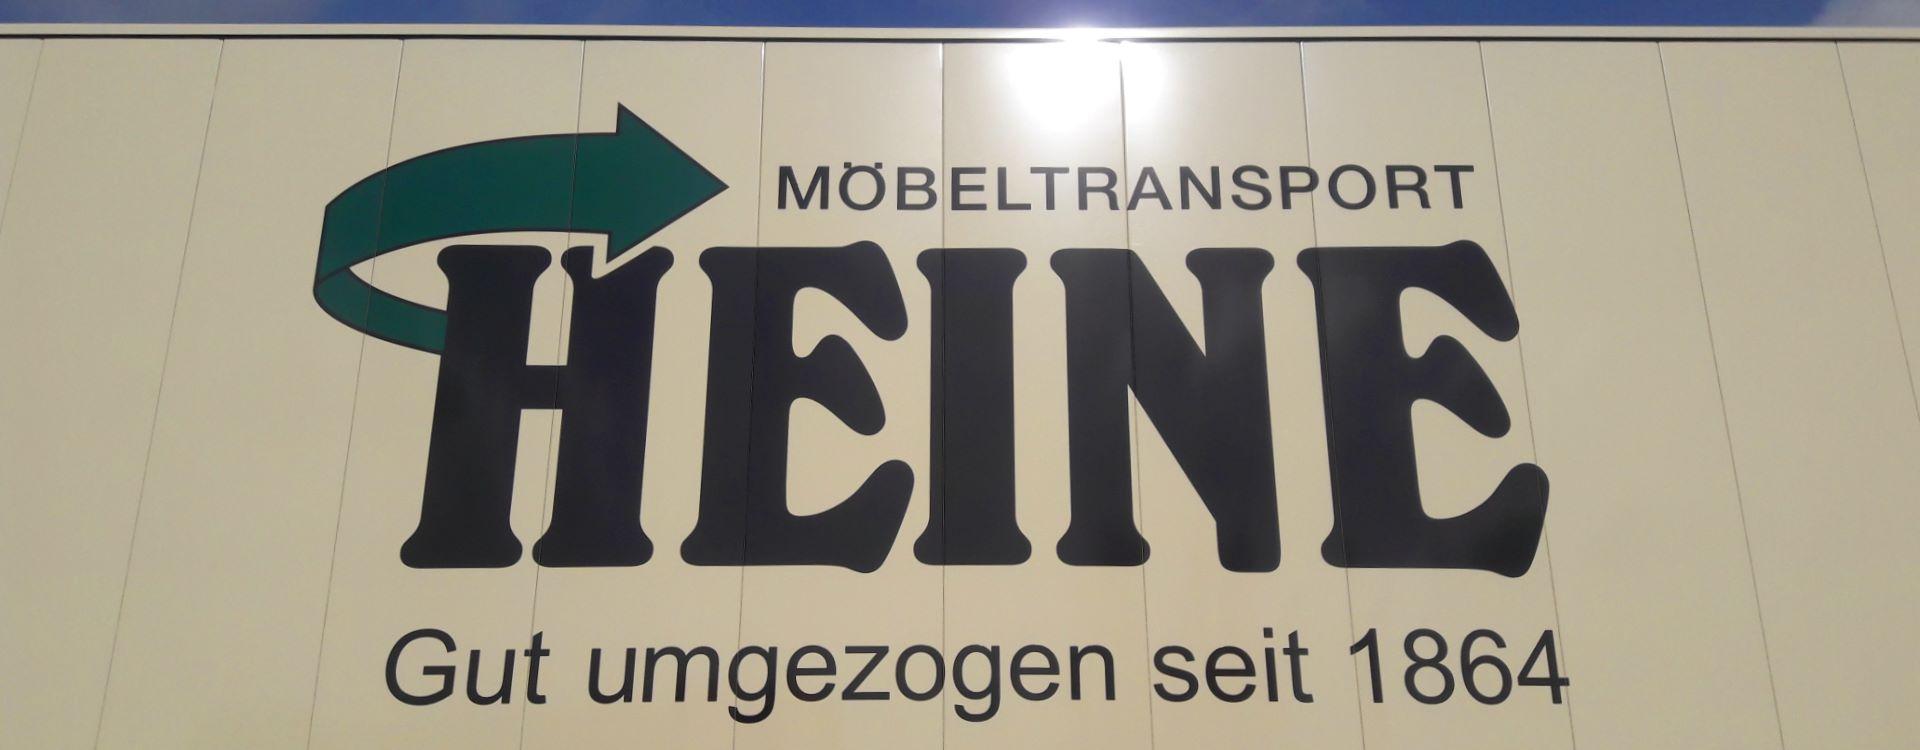 Schriftzug auf Container der Firma Möbeltransport heine GmbH